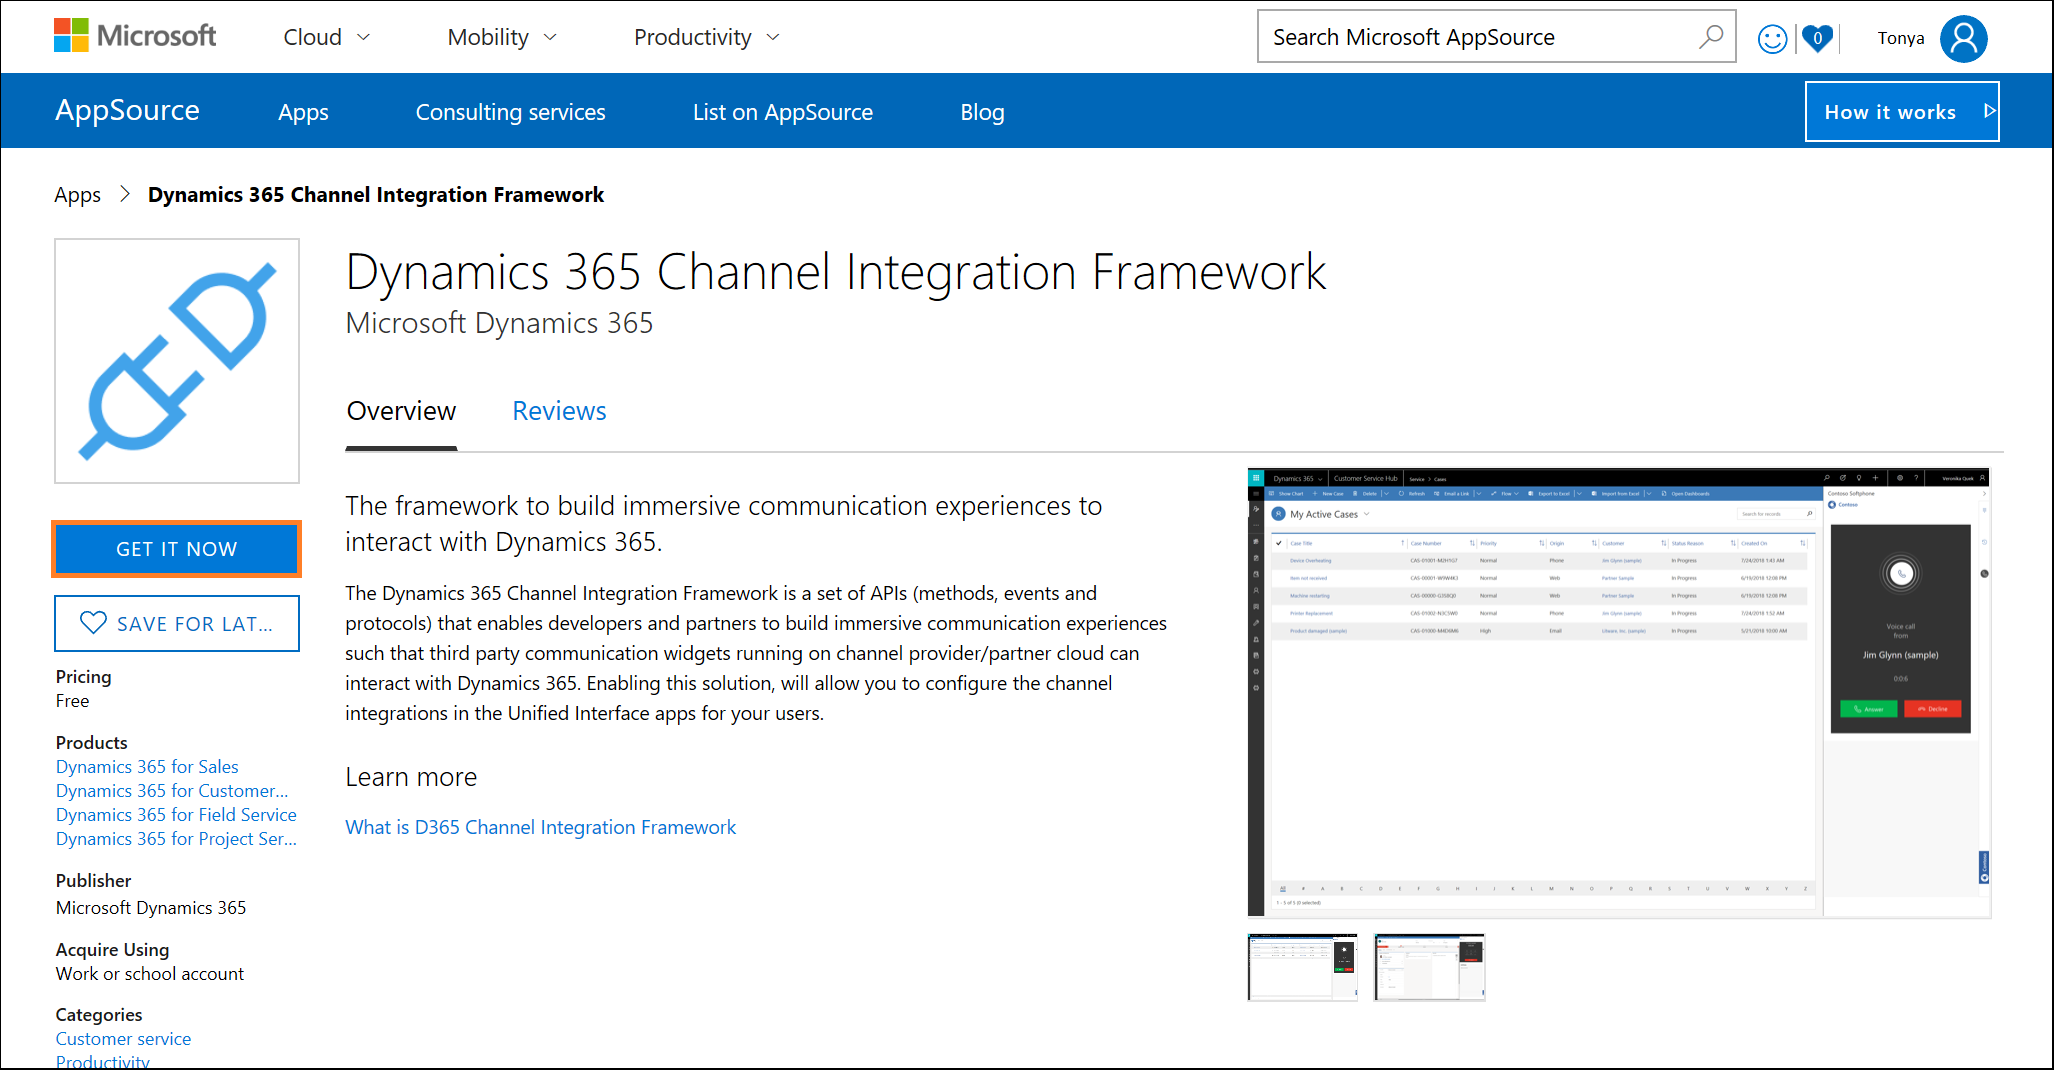 Narzędzia integracji kanału usługi Dynamics 365 w Microsoft AppSource.